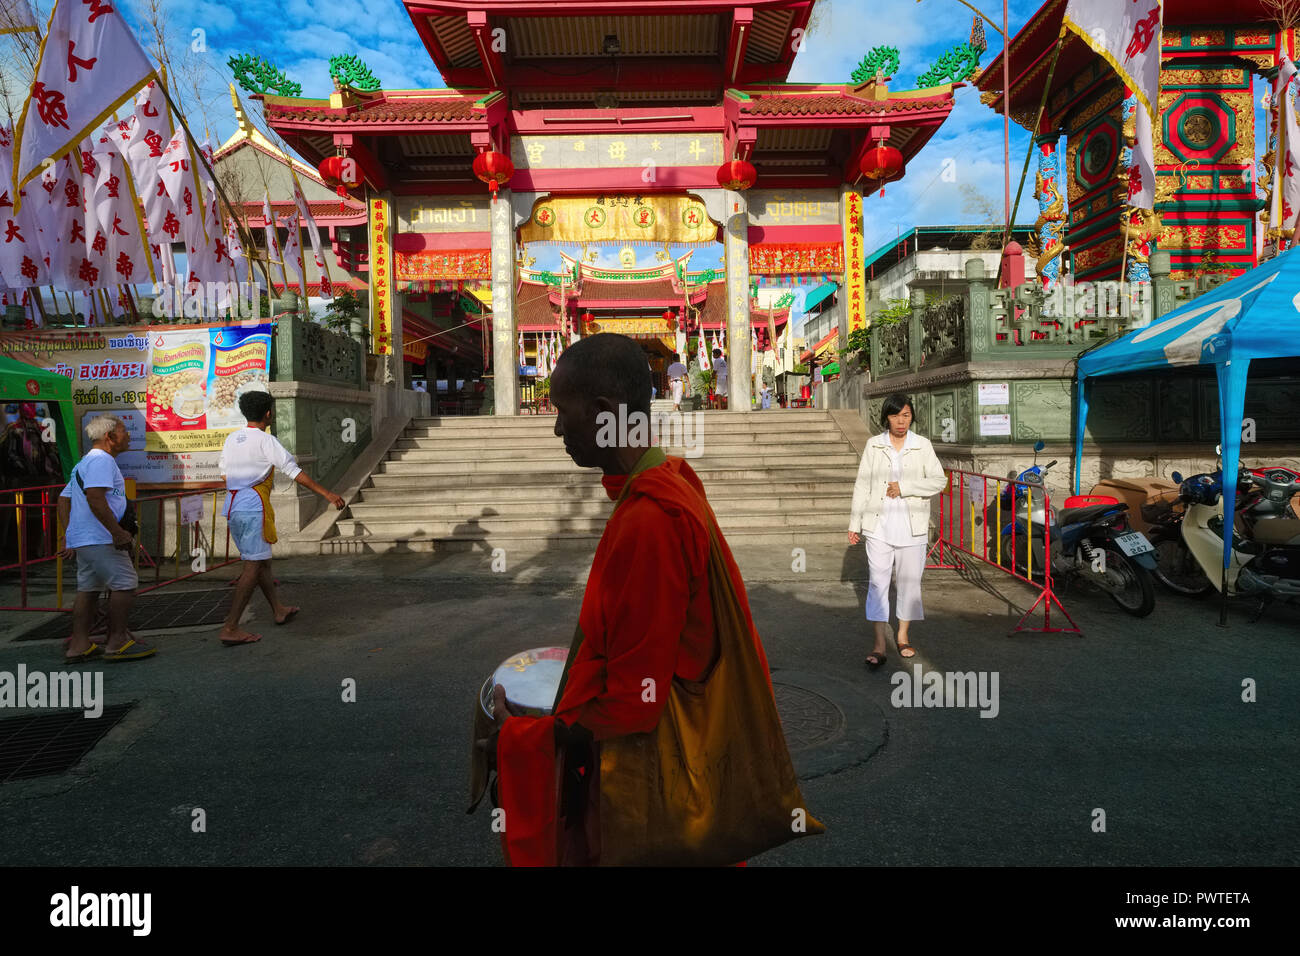 Un moine bouddhiste thaï passe le Jui Tui Temple taoïste dans la ville de Phuket, Phuket, Thaïlande, le début de la matinée l'aumône ronde, le bol d'aumône dans ses mains Banque D'Images